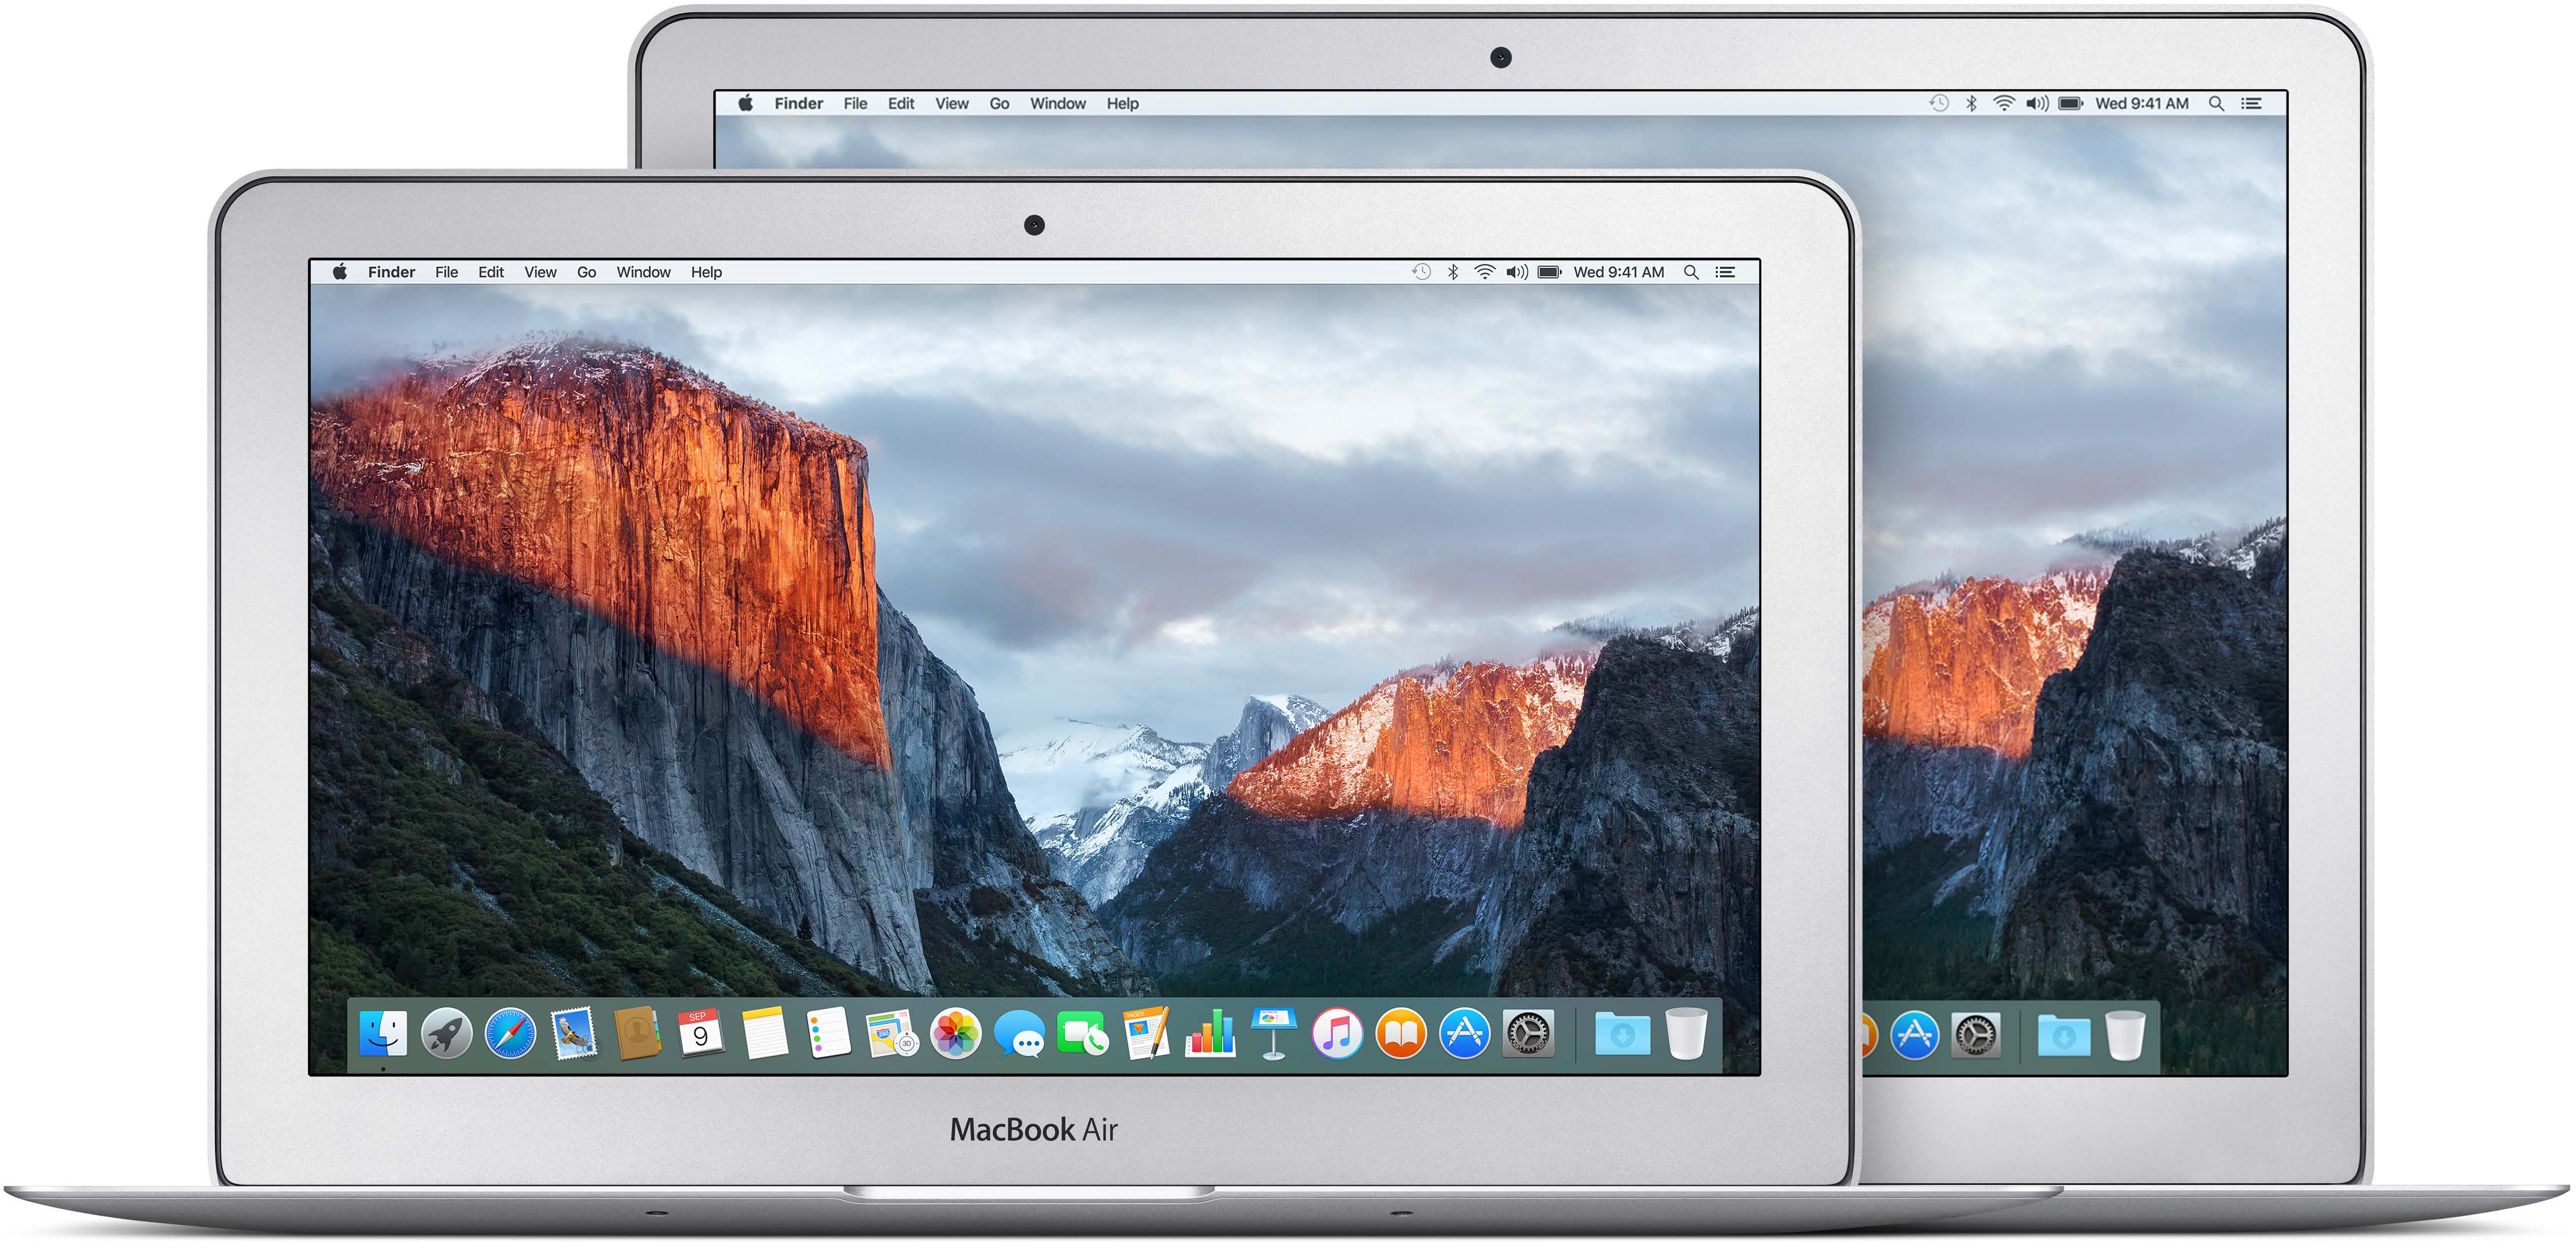 Úvod 1 Váš nový MacBook Air vás vítá Porozhlédněte se. Zajímala by vás rychlá prohlídka funkcí vašeho MacBooku Air? Přejděte do sekce Prohlídka. Pusťte se do toho.